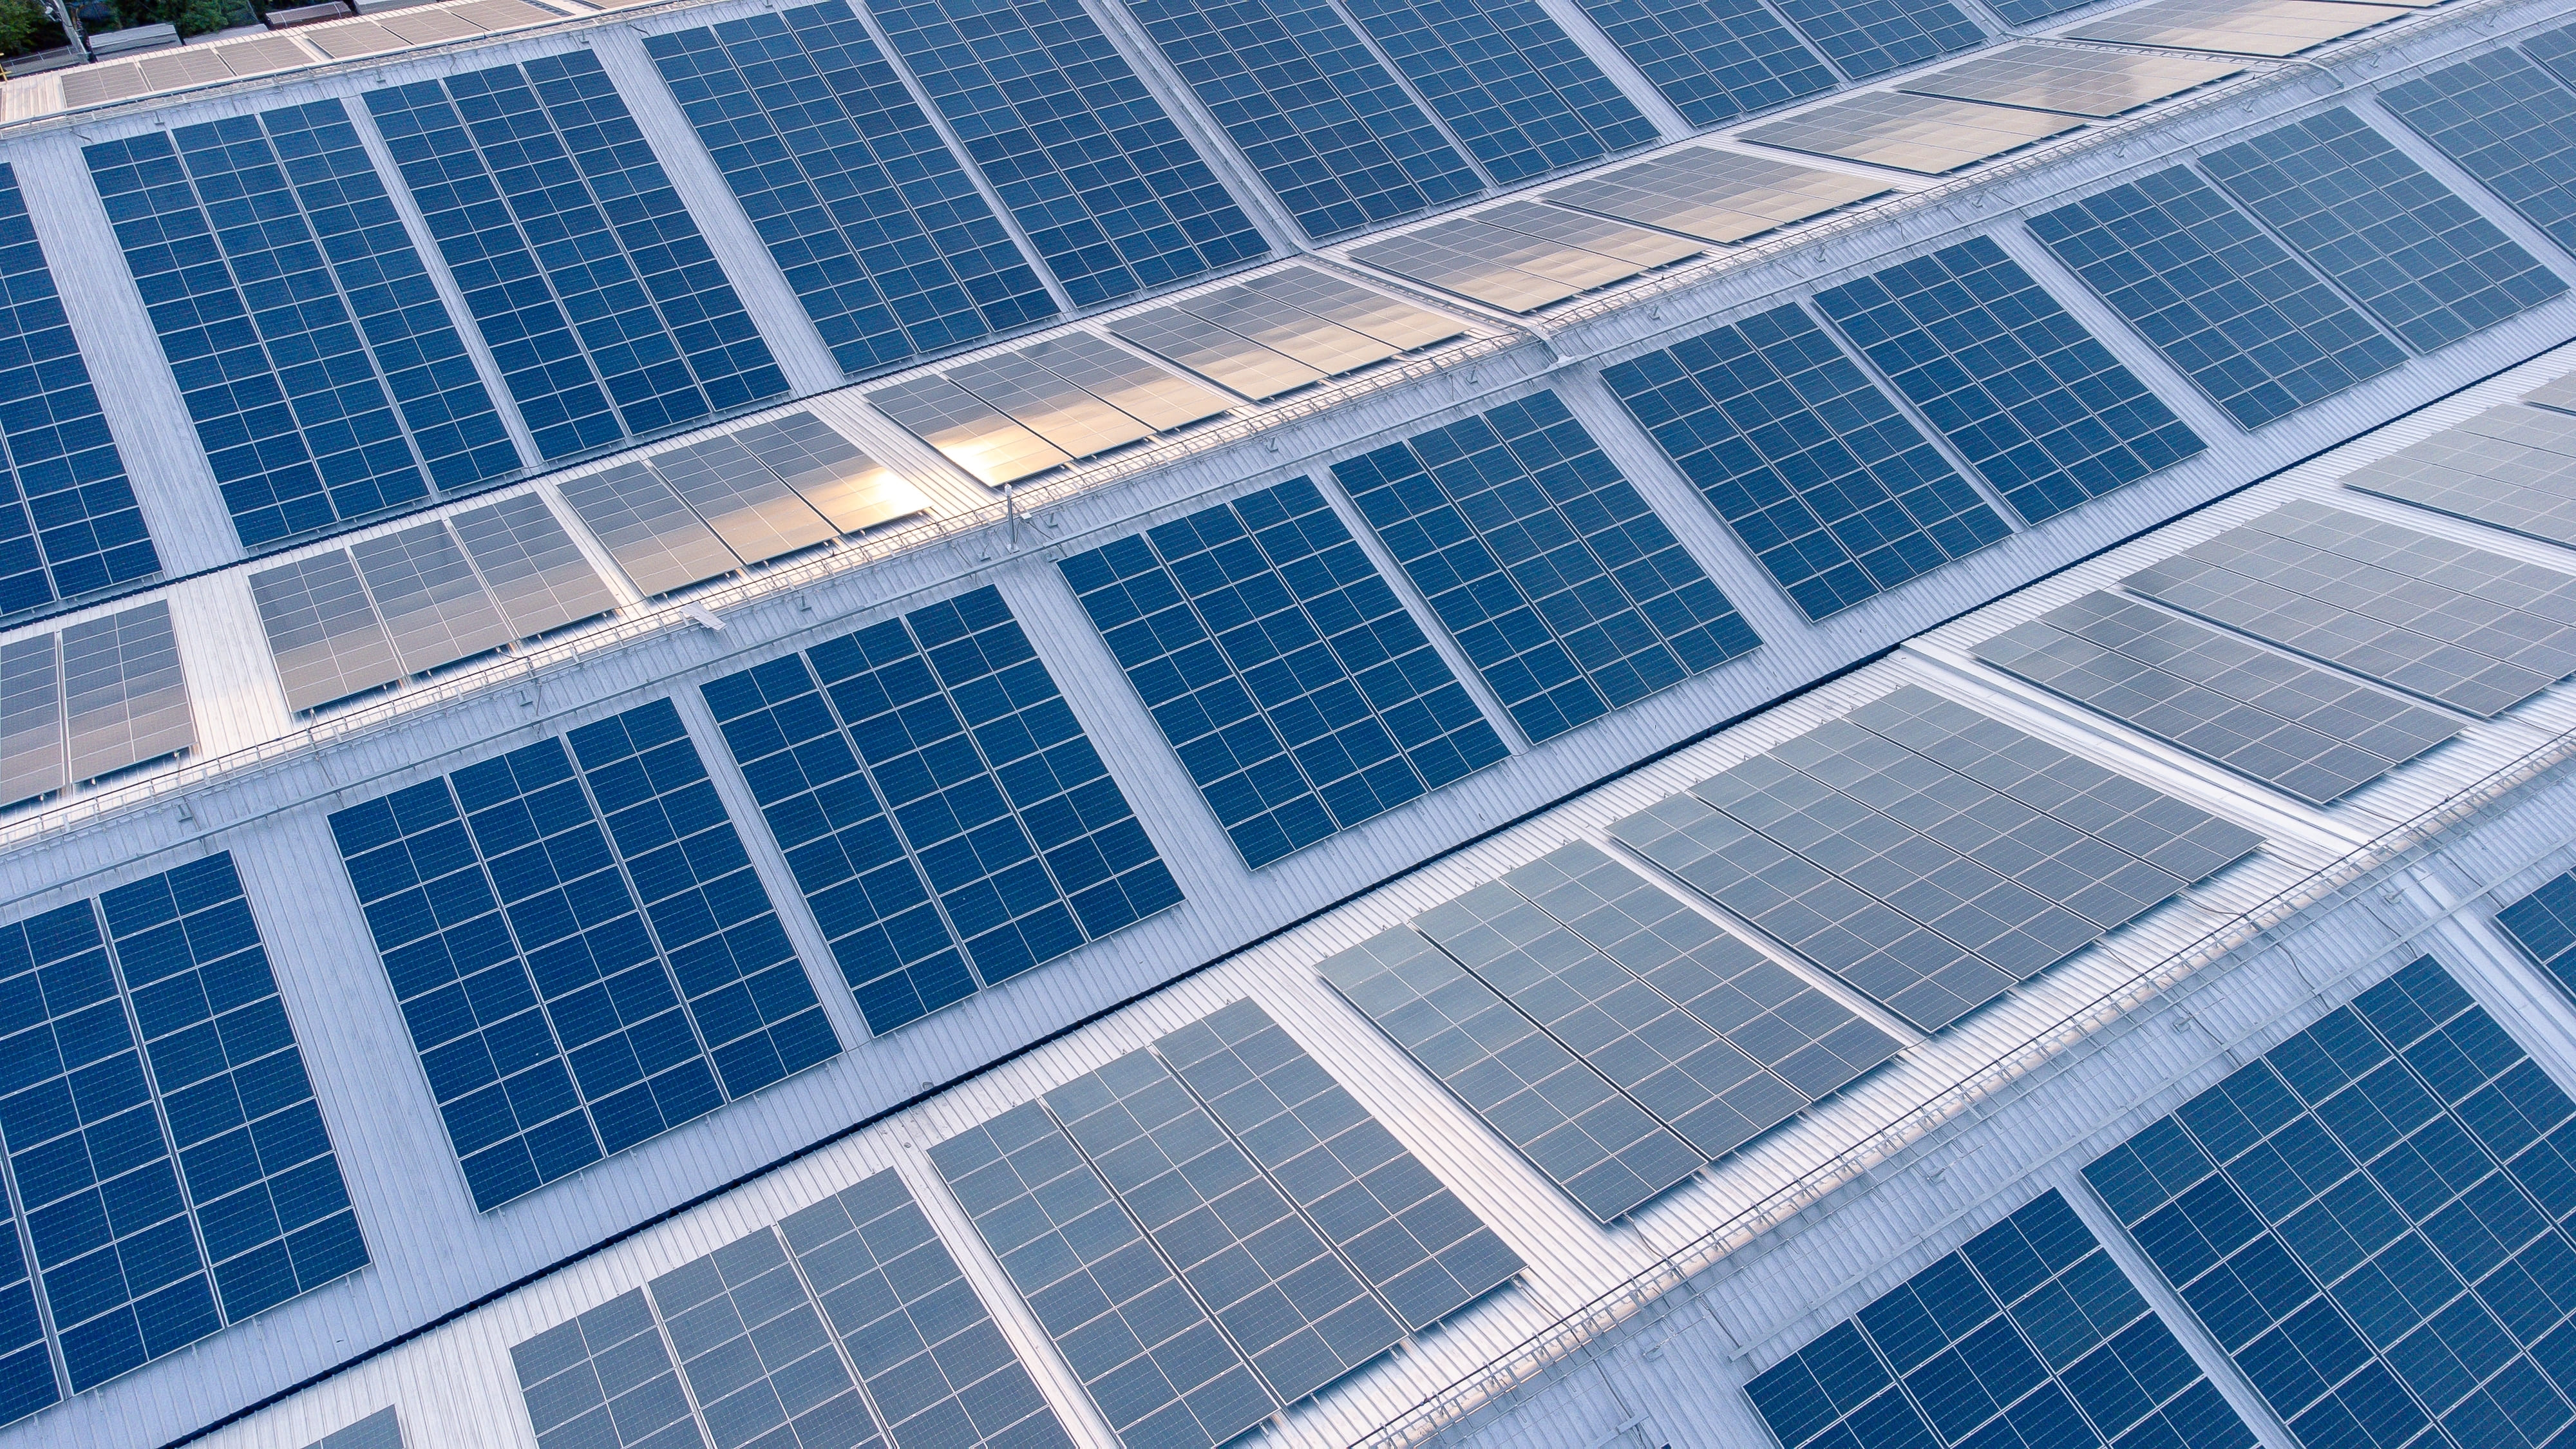 Celulele solare sau fotovoltaice: mod de functionare si tipuri